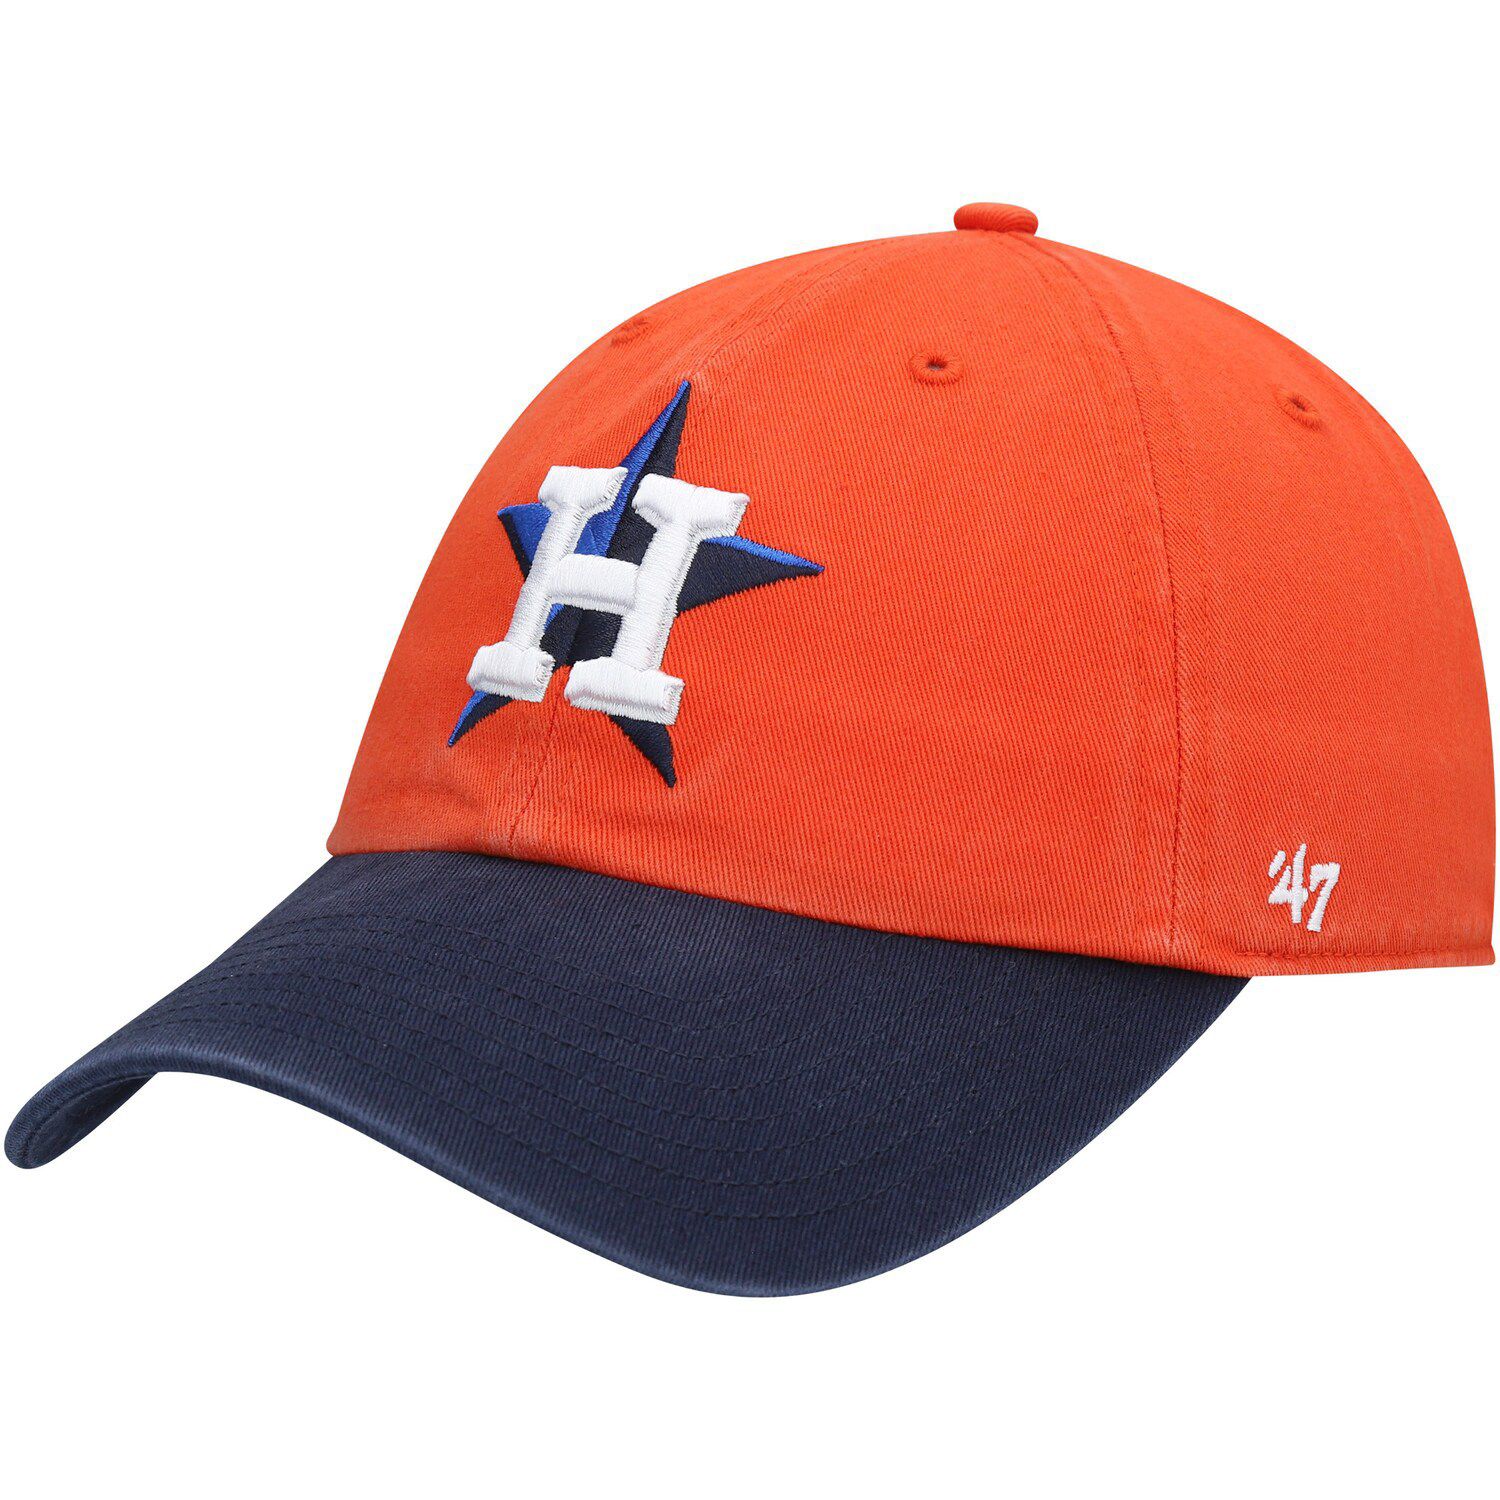 Image for Unbranded Men's '47 Orange/Navy Houston Astros Alternate Clean Up Adjustable Hat at Kohl's.